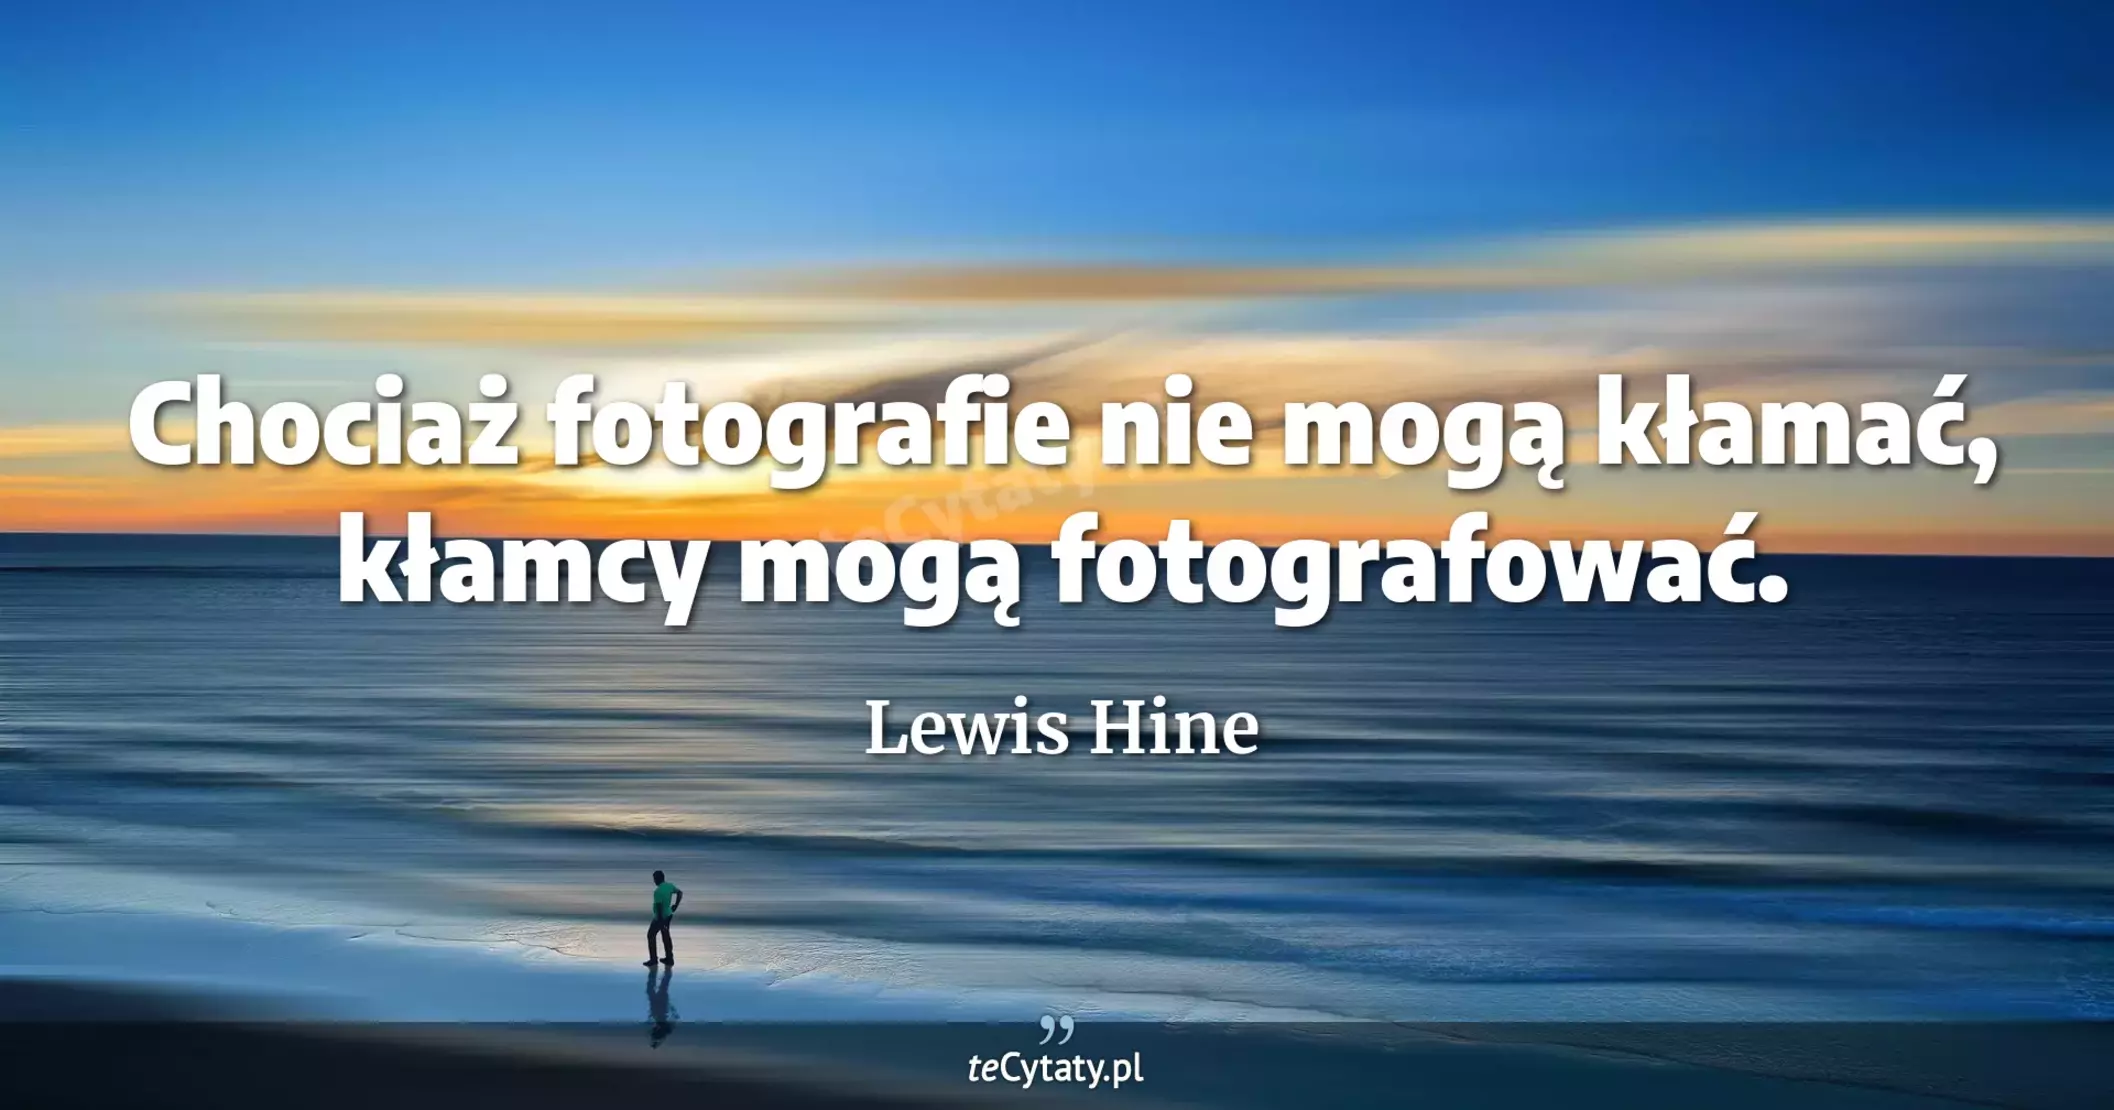 Chociaż fotografie nie mogą kłamać, kłamcy mogą fotografować. - Lewis Hine